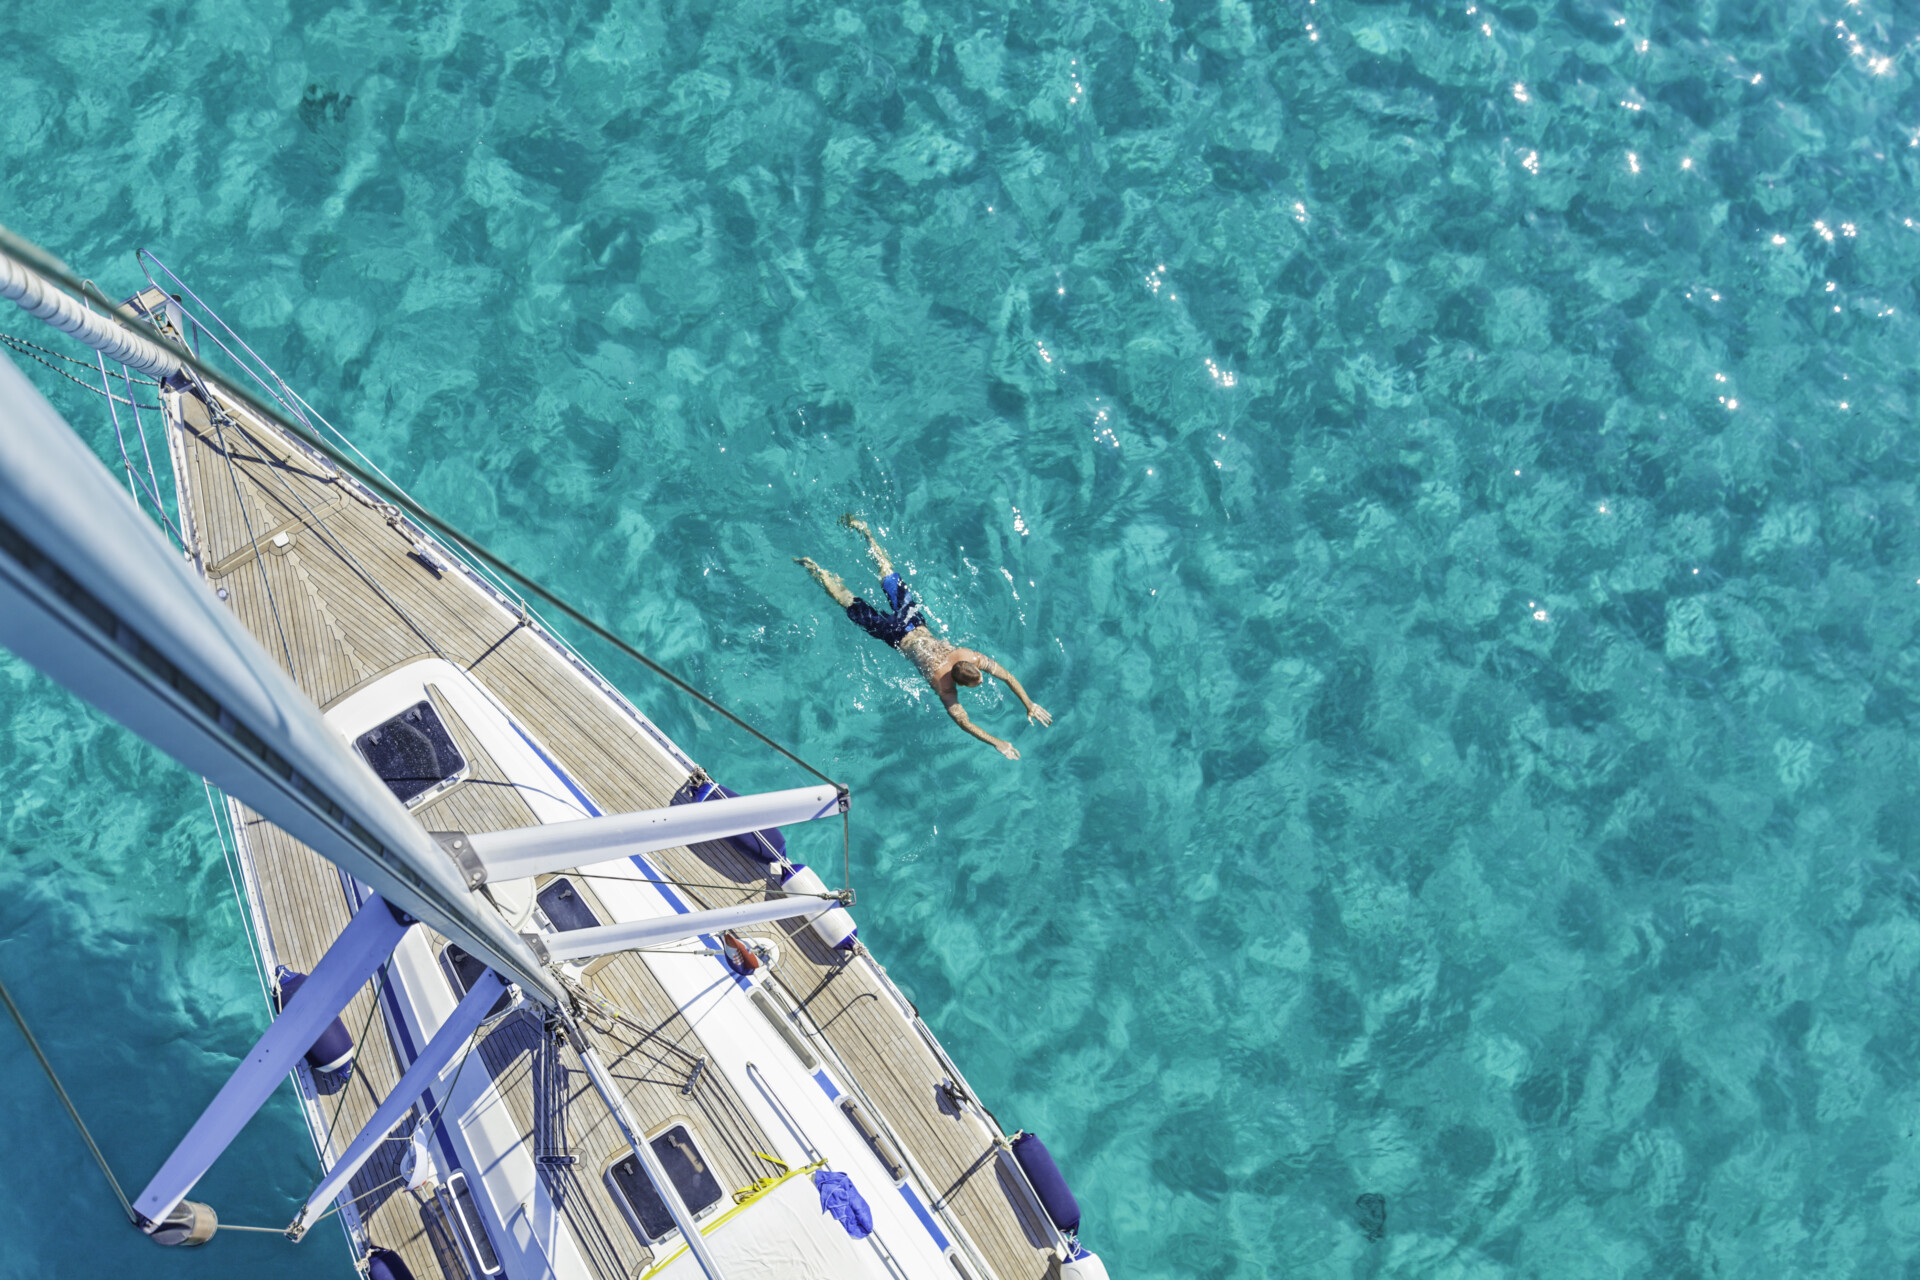 Eine Draufsicht auf eine Person, die neben einem Katamaran in klarem, türkisfarbenem Wasser schwimmt. Das Deck des weißen Segelschiffs mit blauen Akzenten ist sichtbar, während die Person entspannt im Wasser treibt.